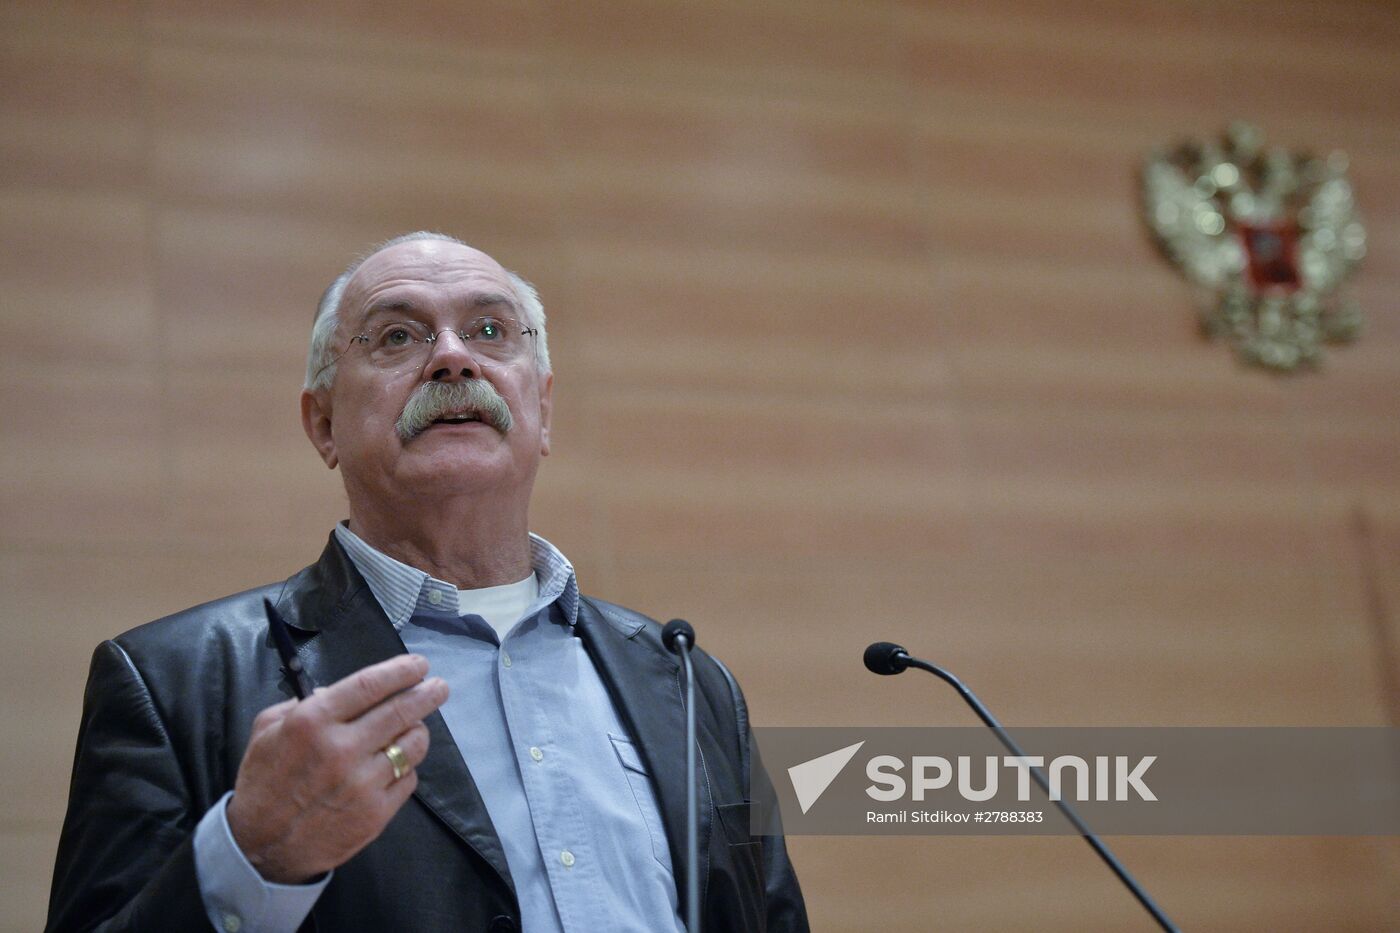 Nikita Mikhalkov gives lecture at Russian State Duma